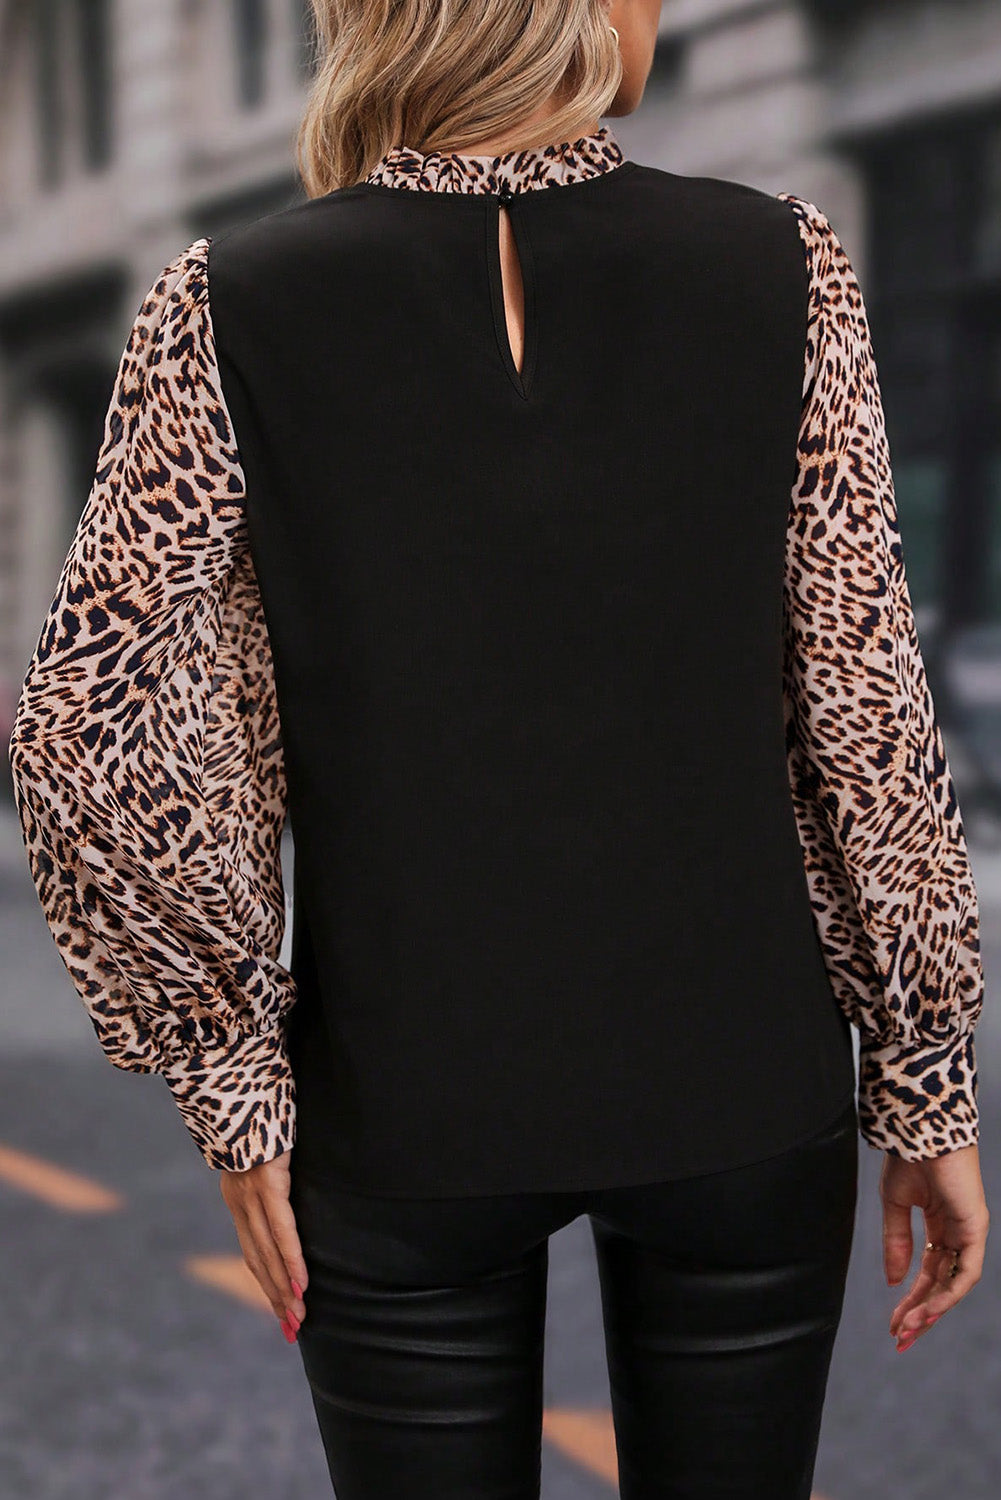 Schwarze Bluse mit Laternenärmeln und kontrastierendem Leopardenmuster